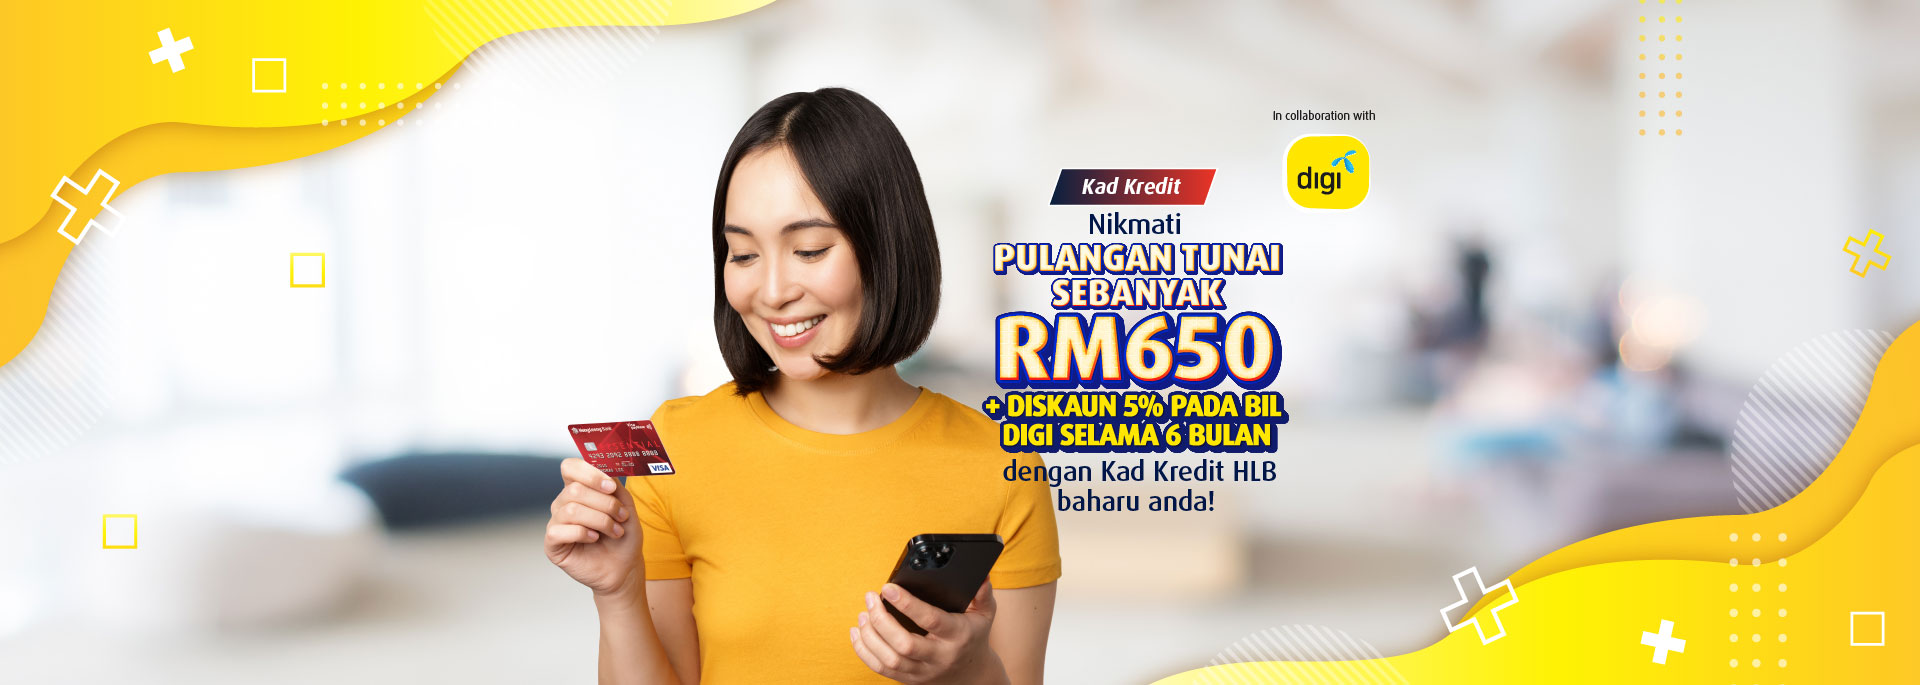 Untuk Anda Sahaja, pengguna Digi! Dapatkan Pulangan Tunai sebanyak RM650 dengan Kad Kredit HLB